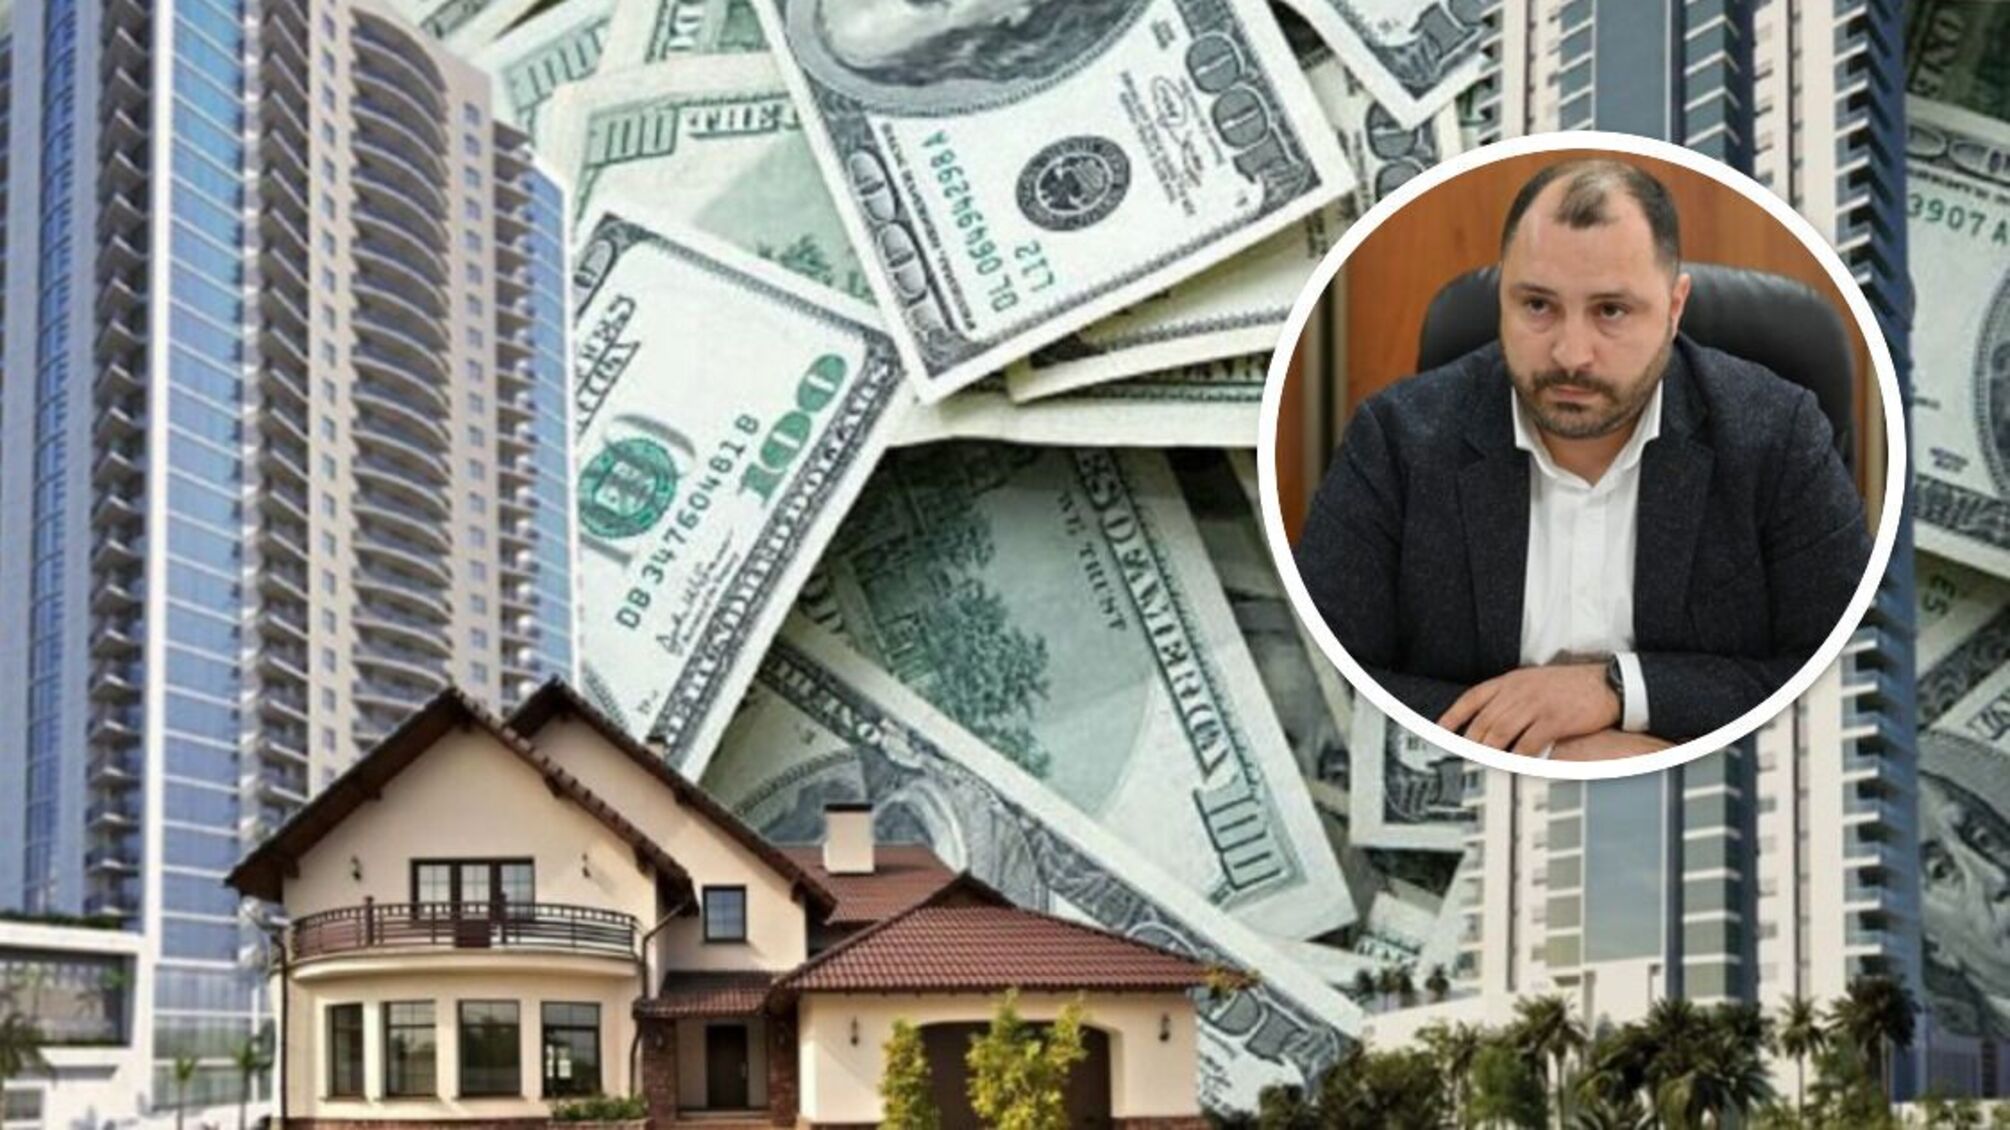 Квартиры, поместья и валютные ссуды: глава 'Киевкоммунсервиса' задекларировал дорогостоящую недвижимость вопреки официальным доходам